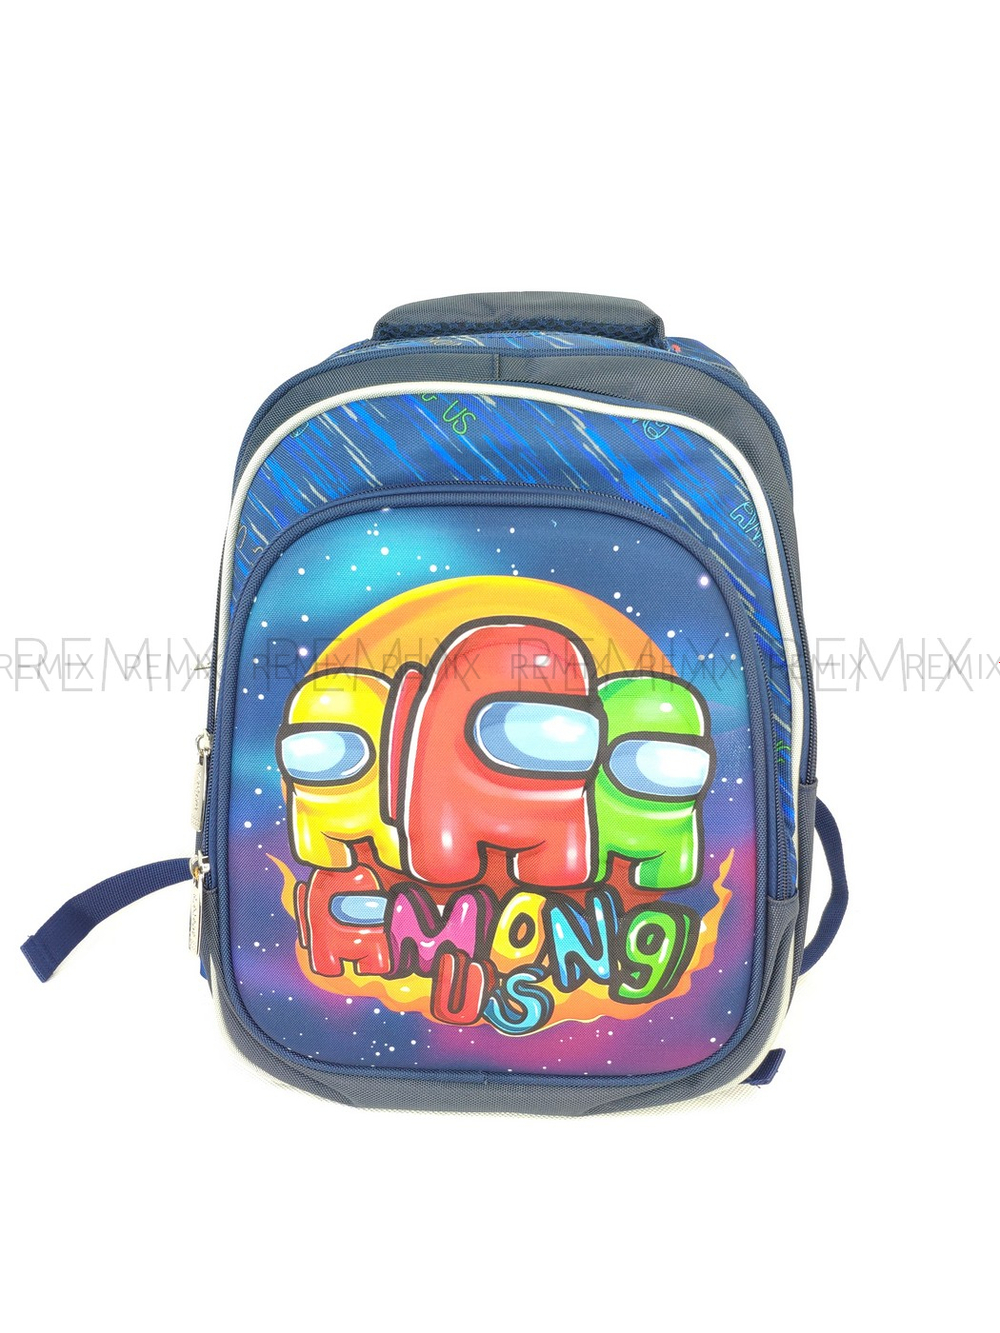 Рюкзак детский школьный мягкий c объёмным рисунком (внешняя сторона жесткая)